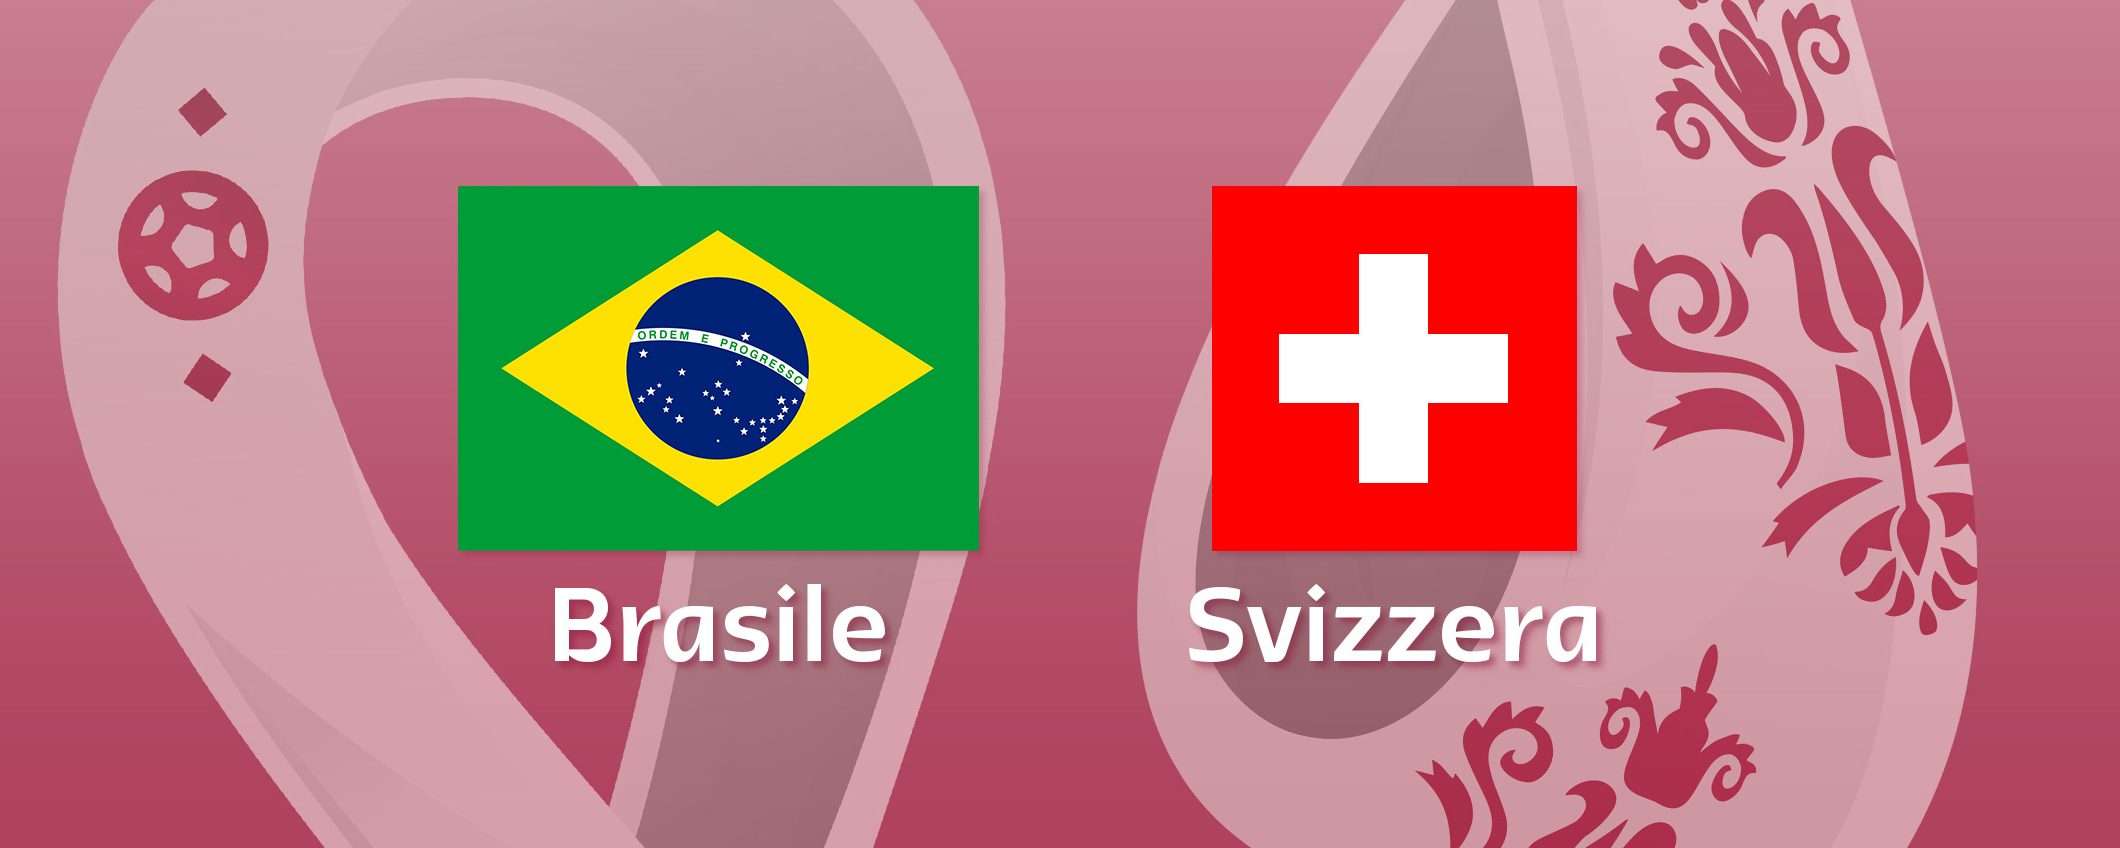 Come vedere Brasile-Svizzera in streaming